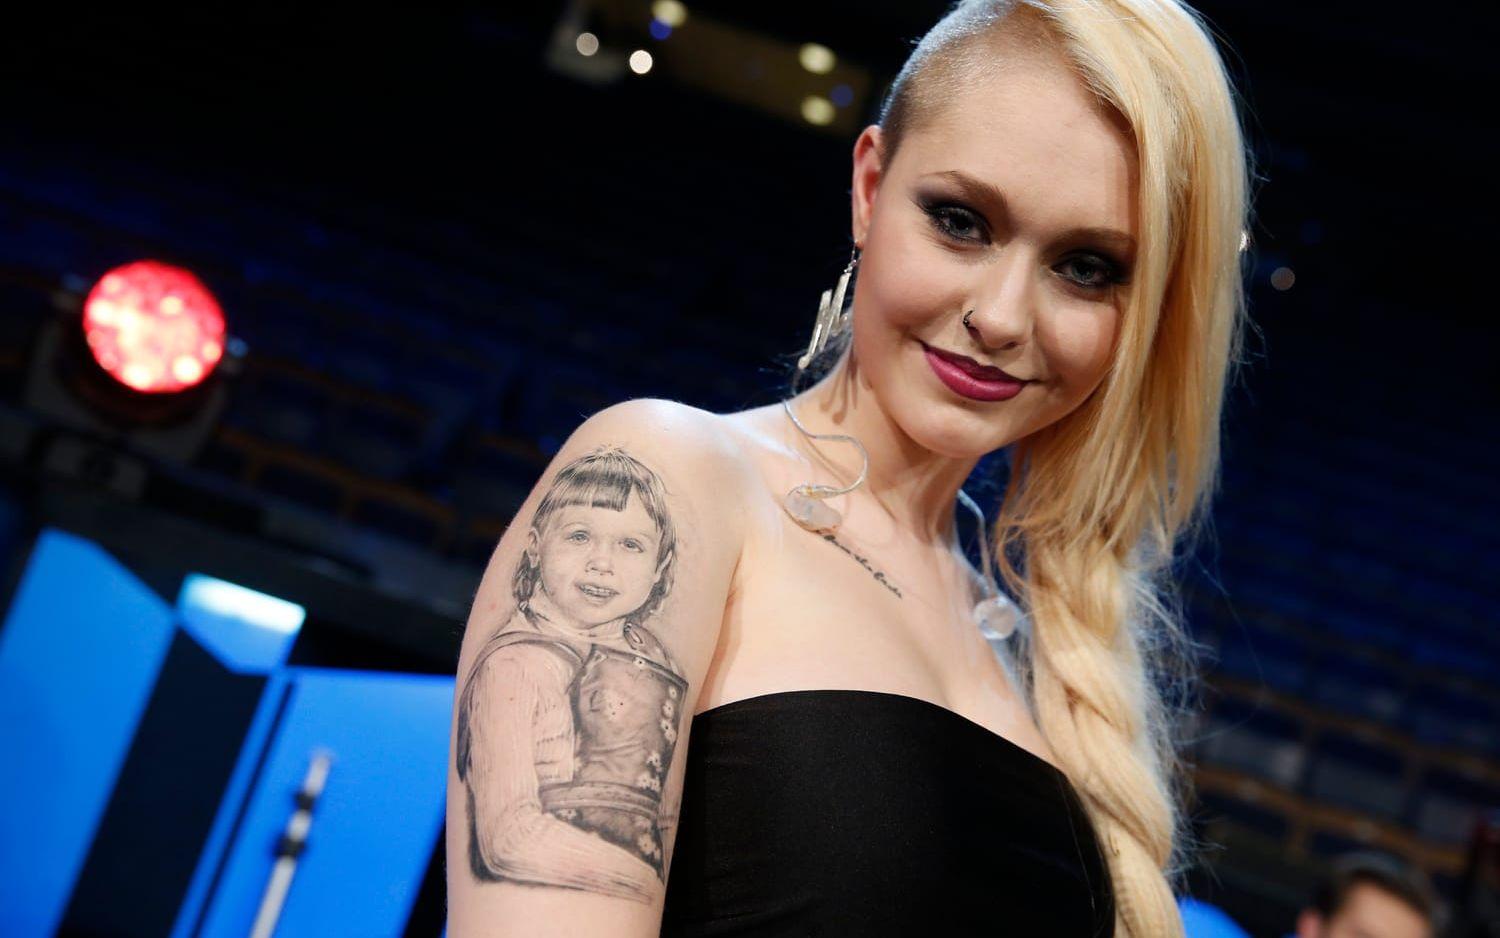 Manda tävlade i Melodifestivalen 2014 och visade upp sin tatuering föreställande mamma Viveca. BILD: TT